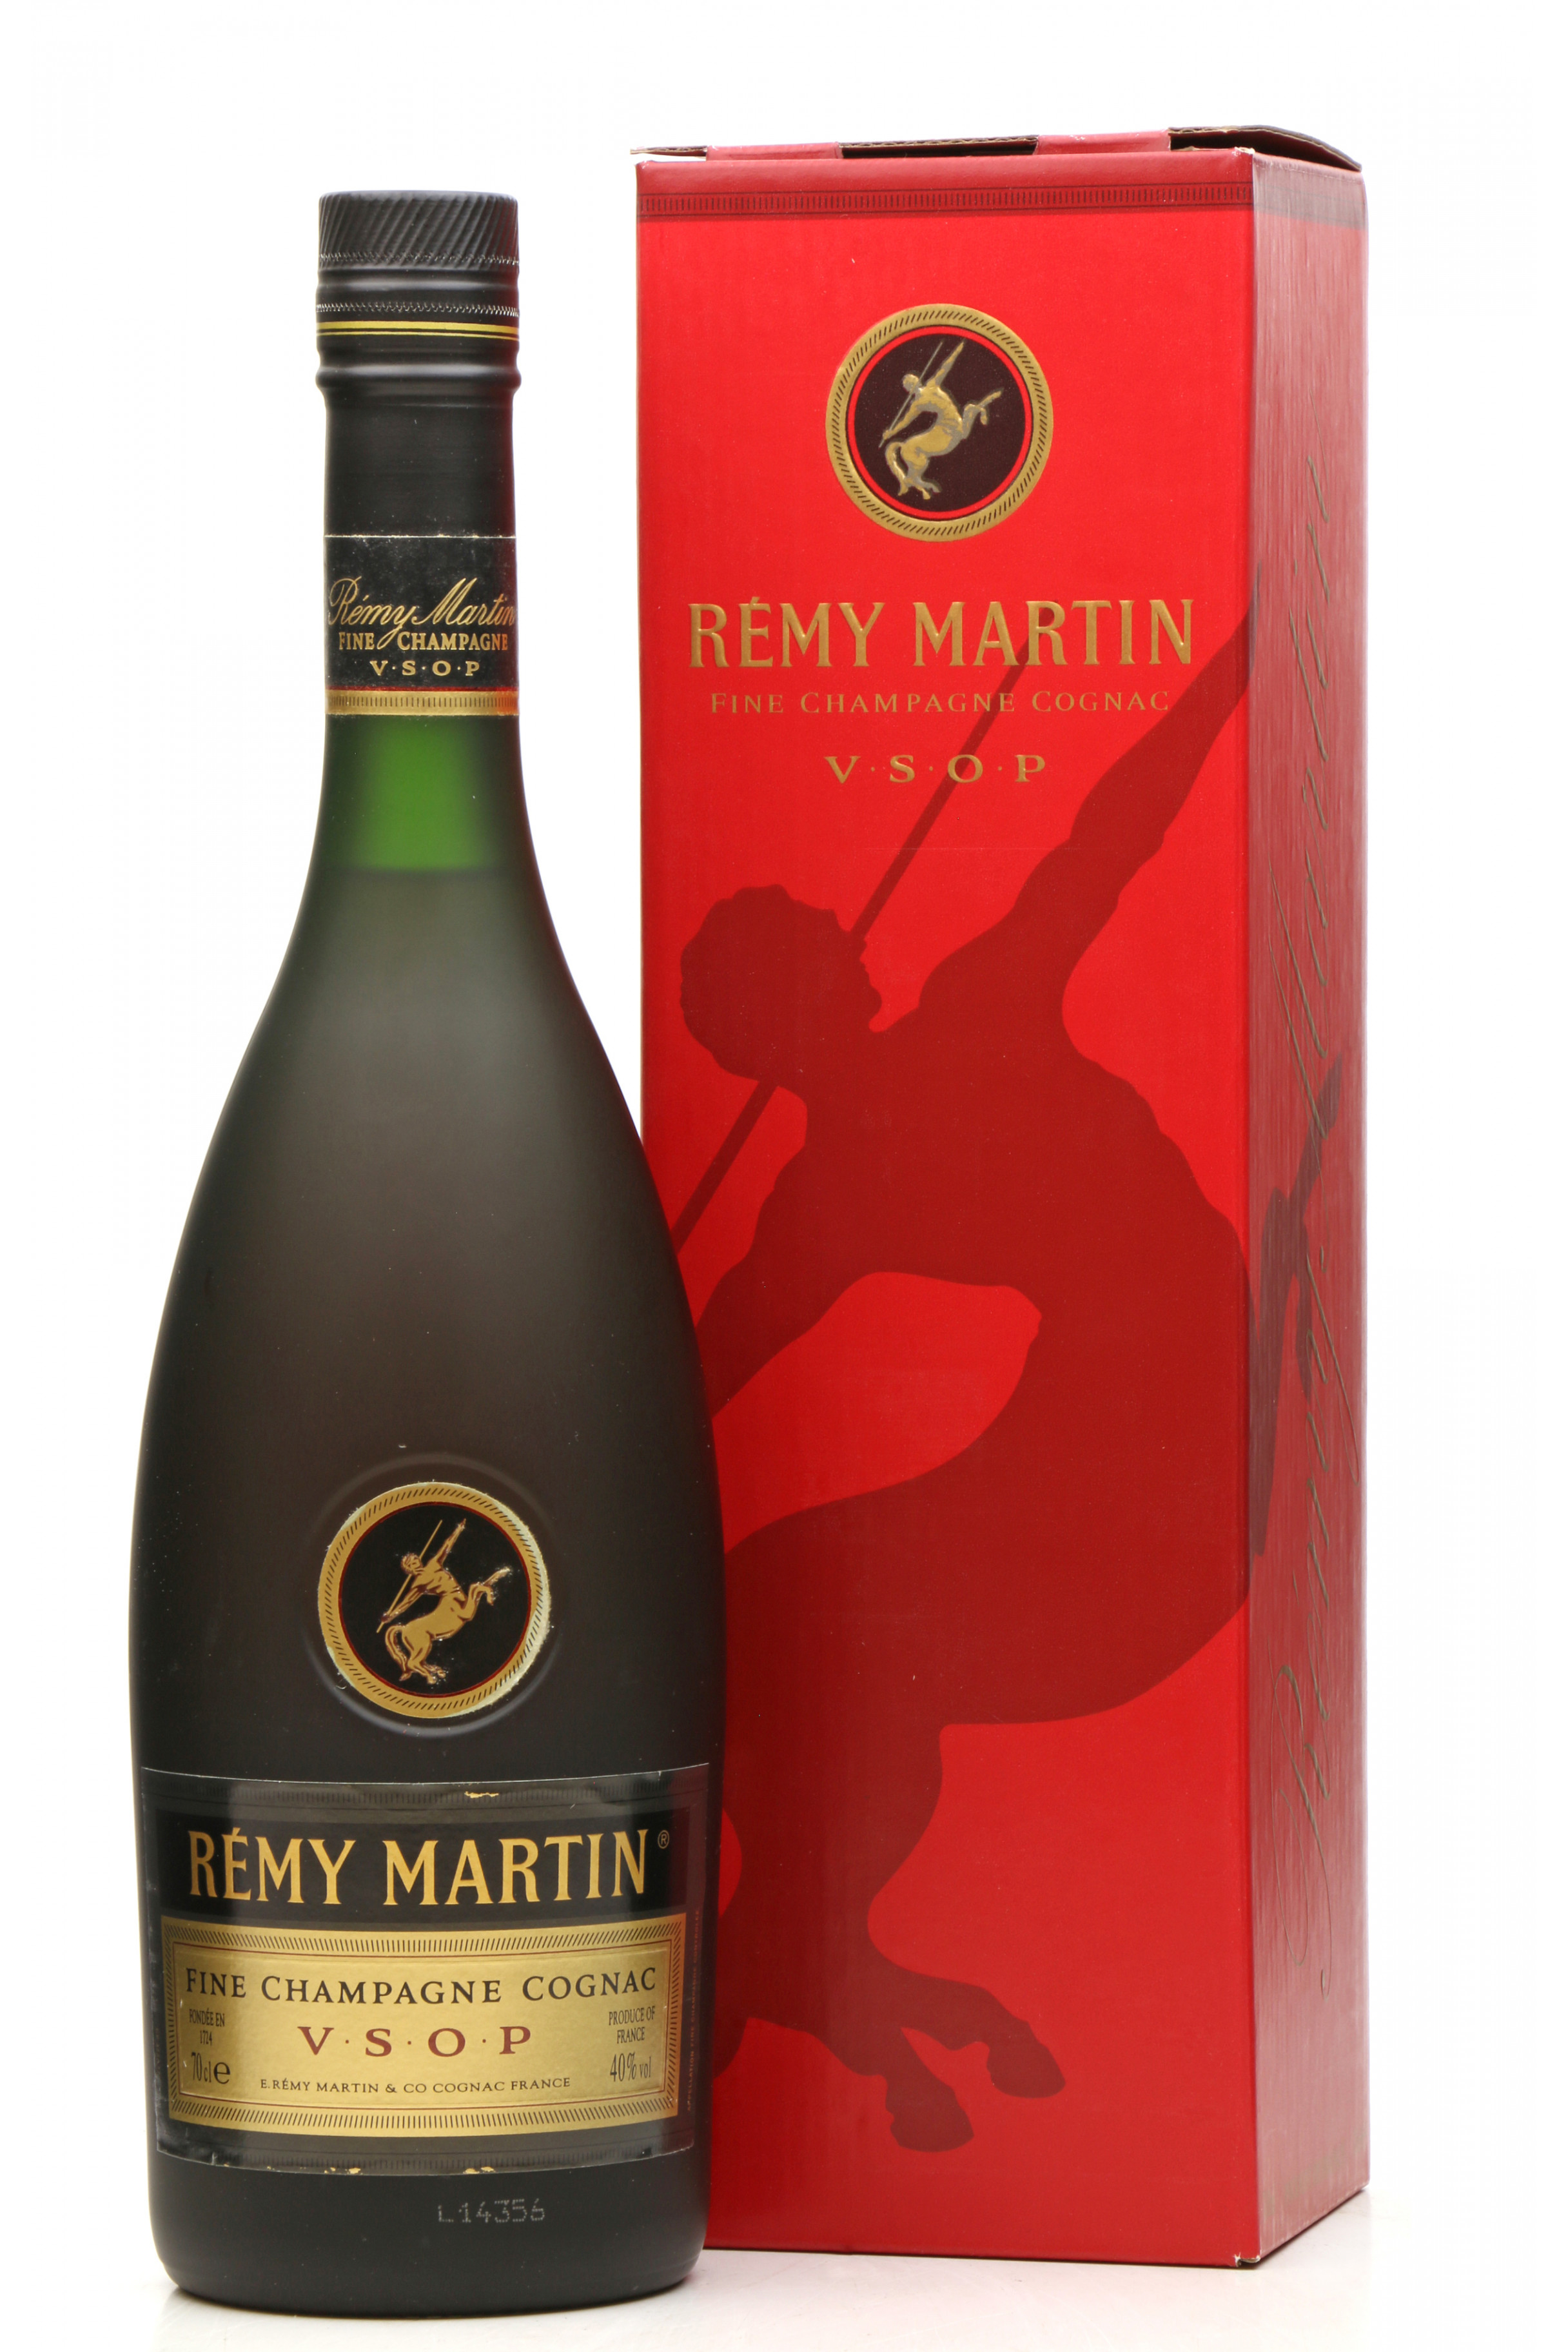 Remy martin Fine champagne